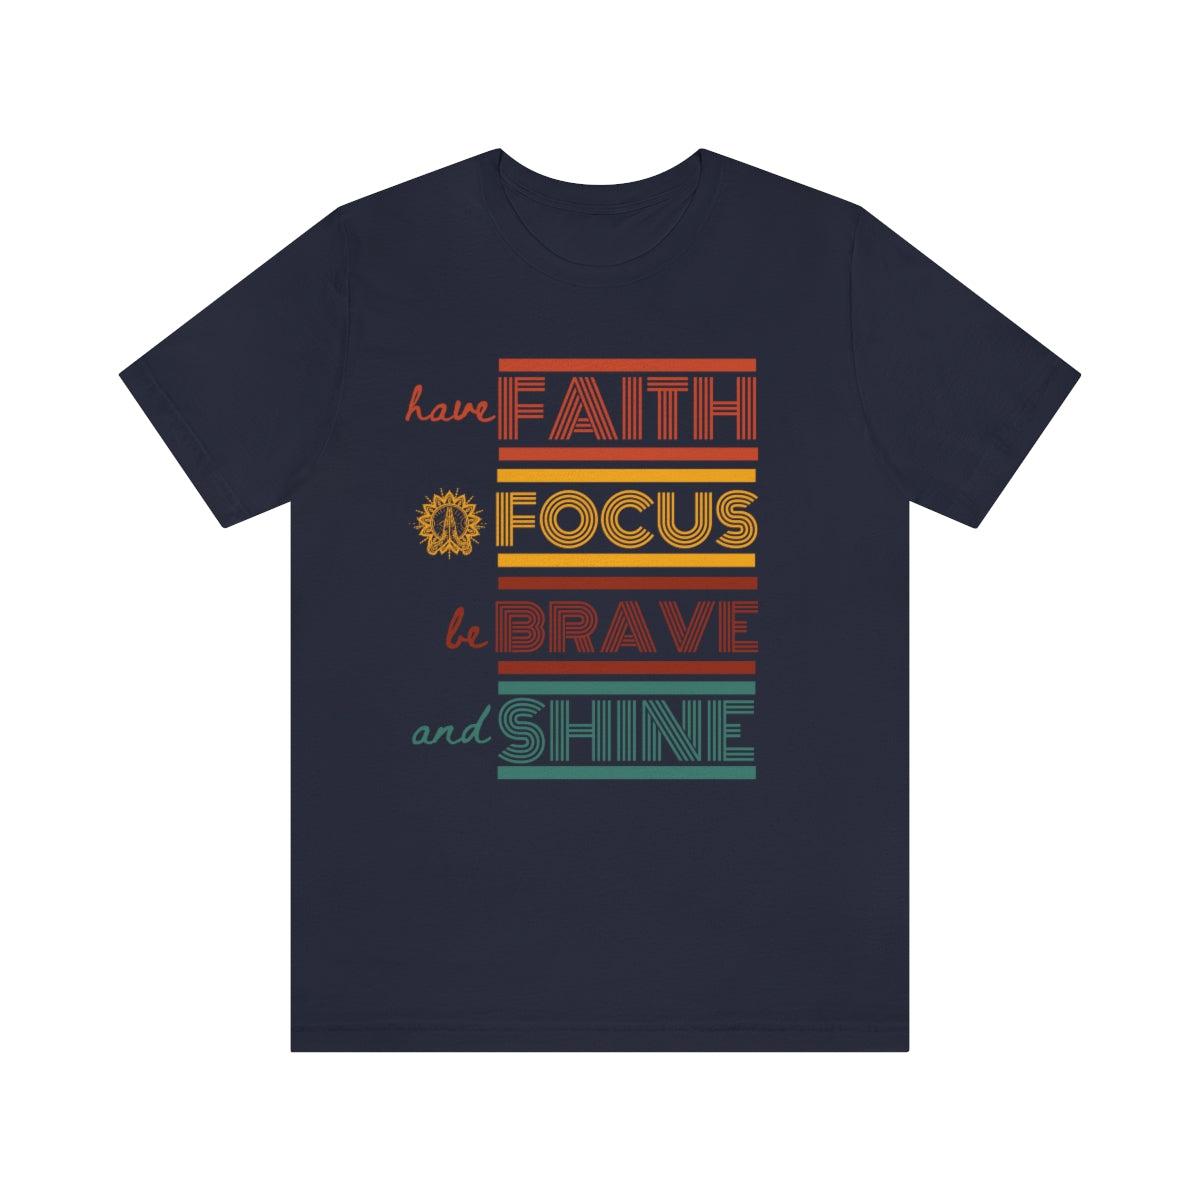 Have Faith T-Shirt